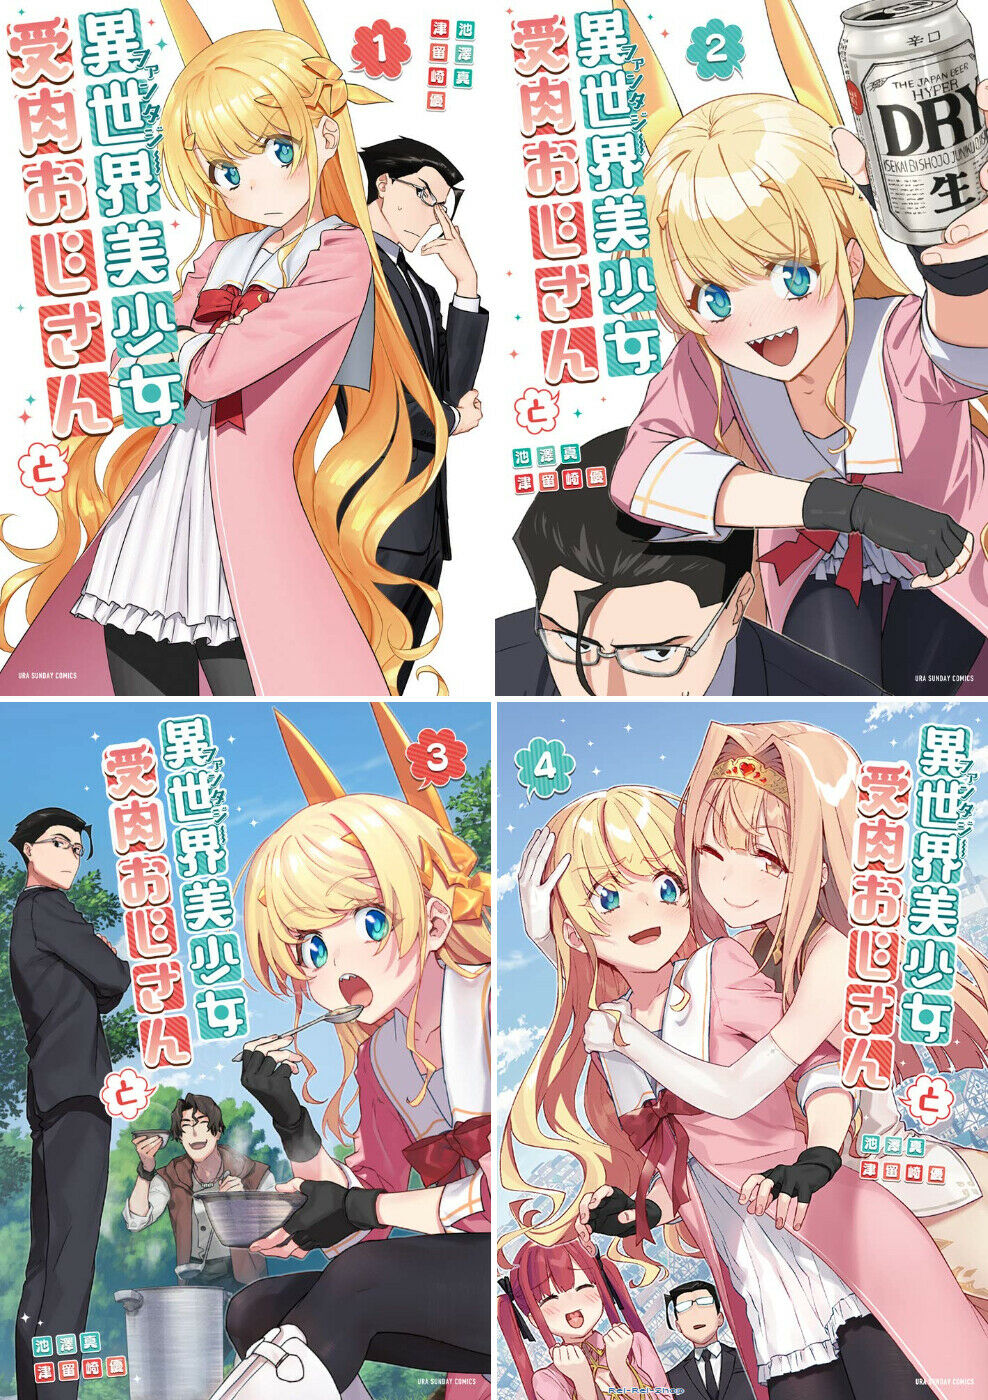 Japanese Comic Manga Book Fantasy Bishoujo Juniku Ojisan to vol.1-4 set NEW